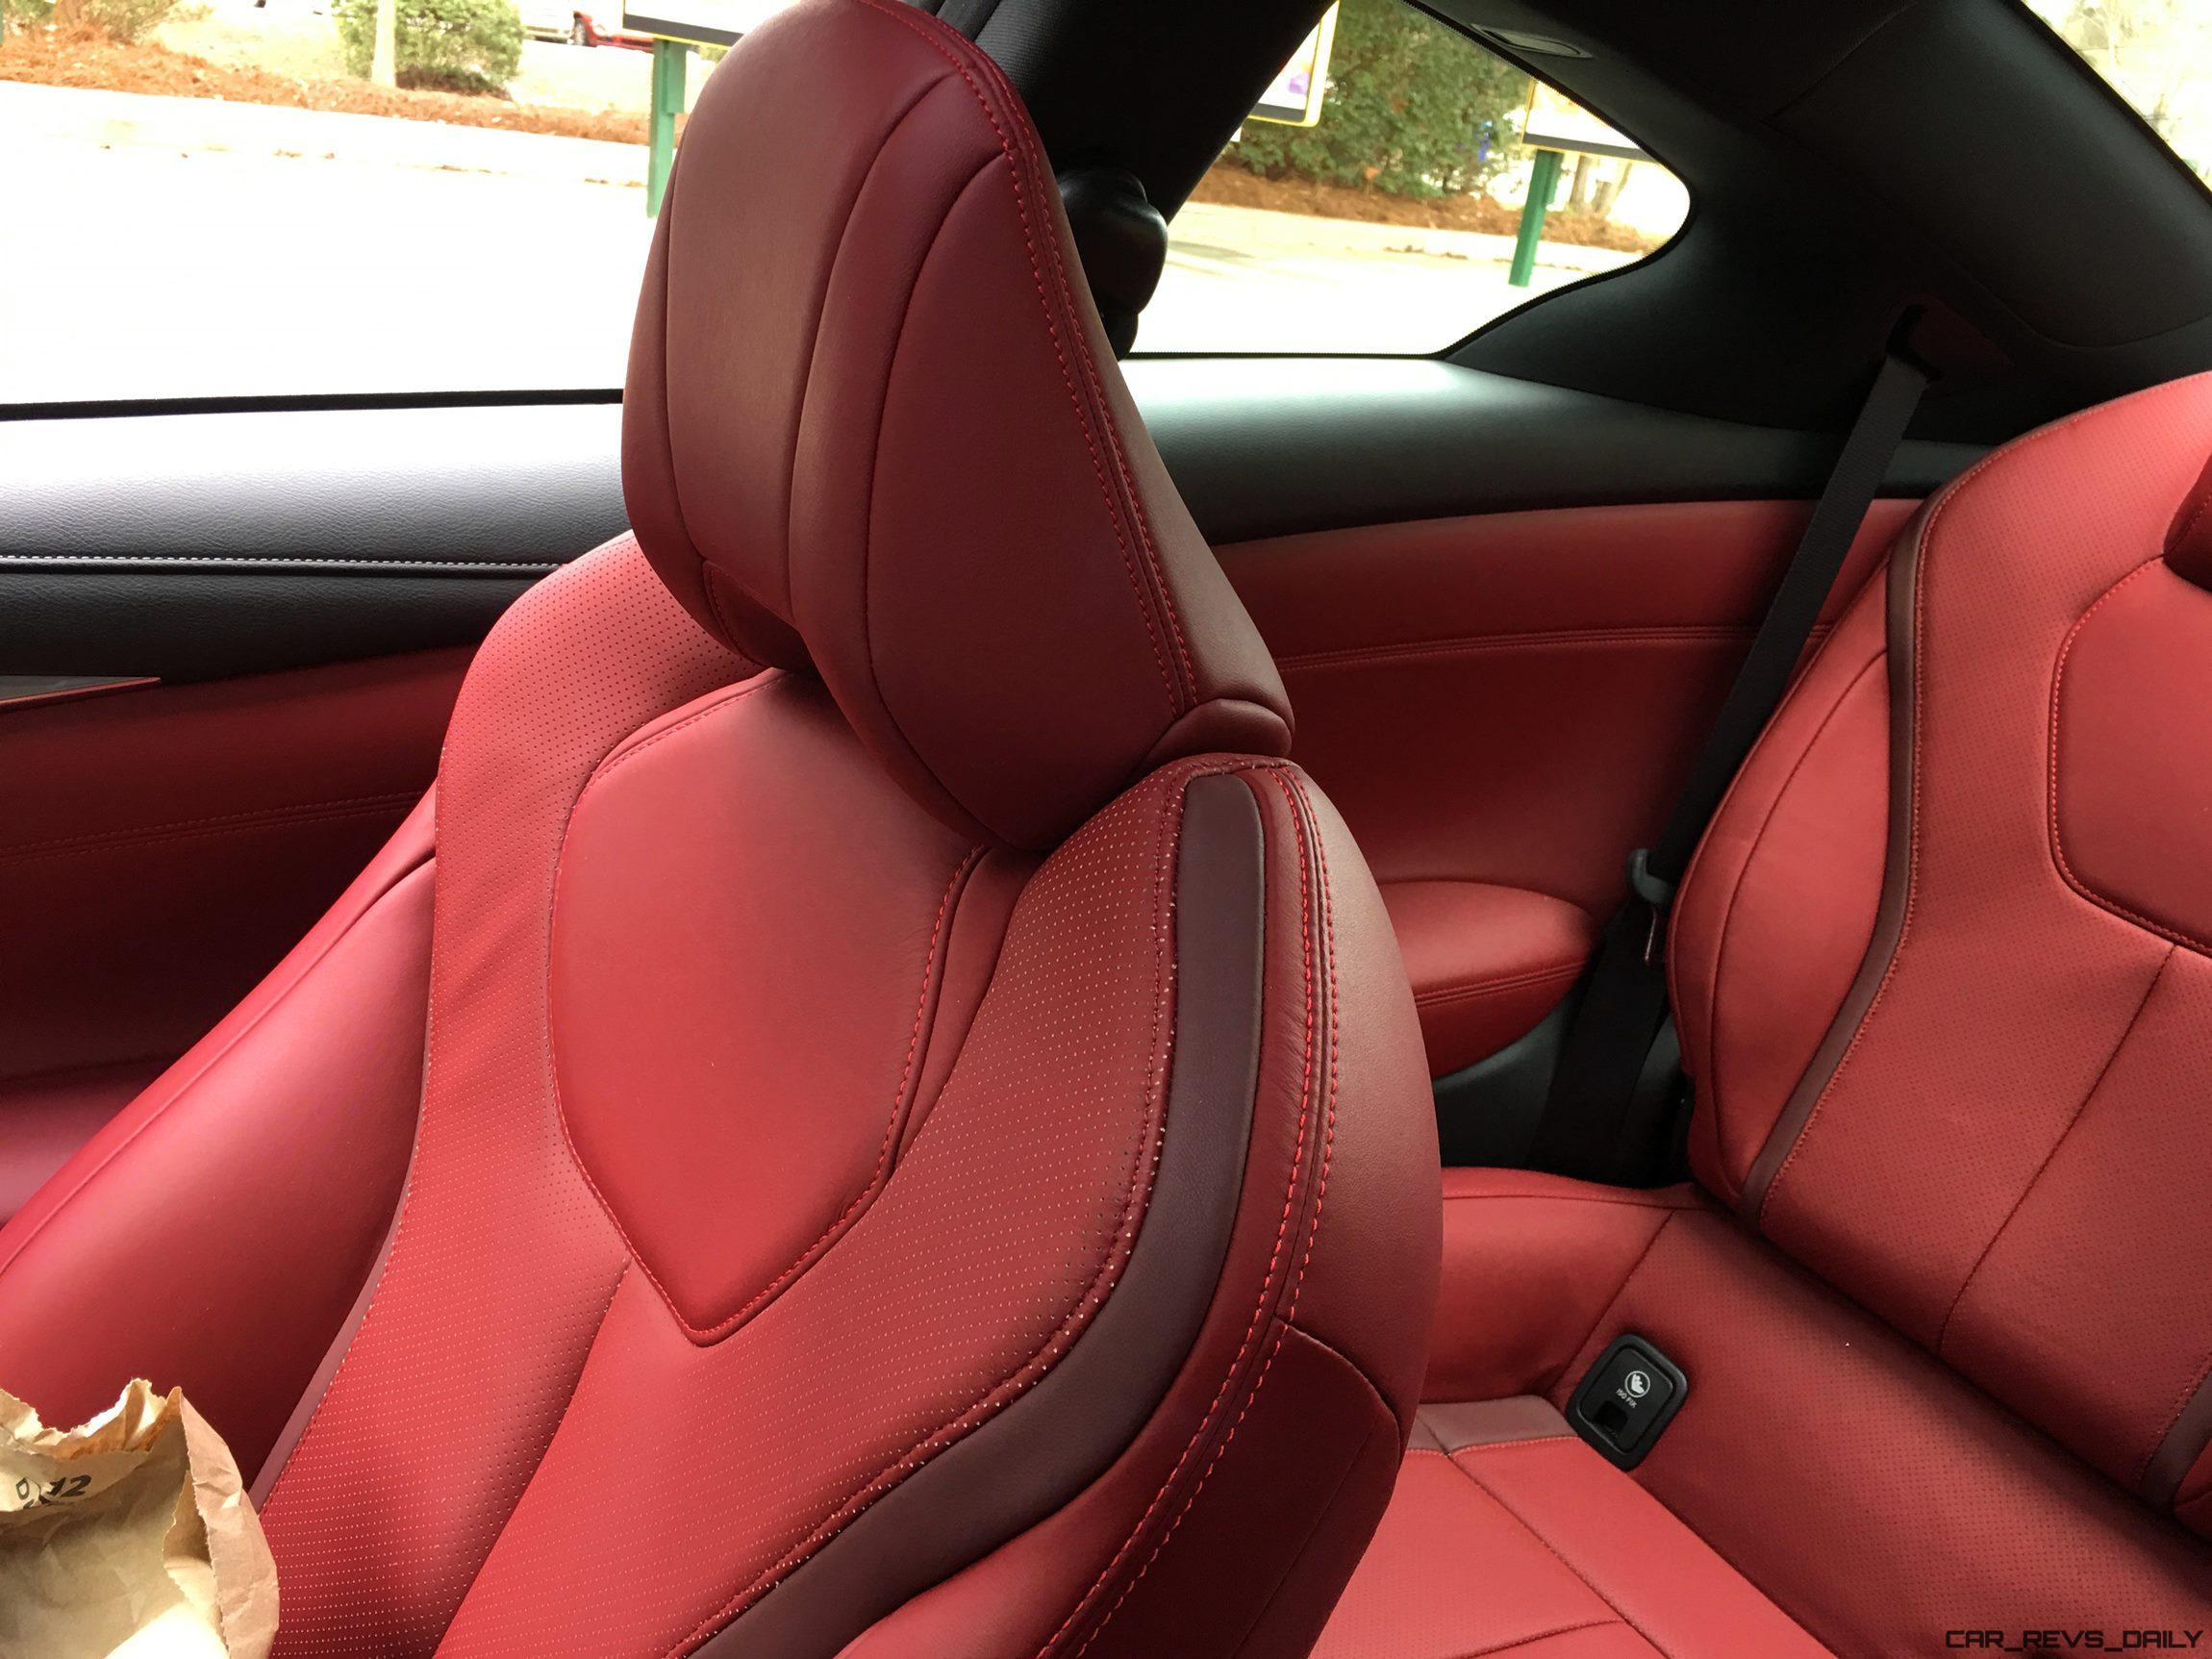 2017 Infiniti Q60 Red Sport 400 Interior Photos 7